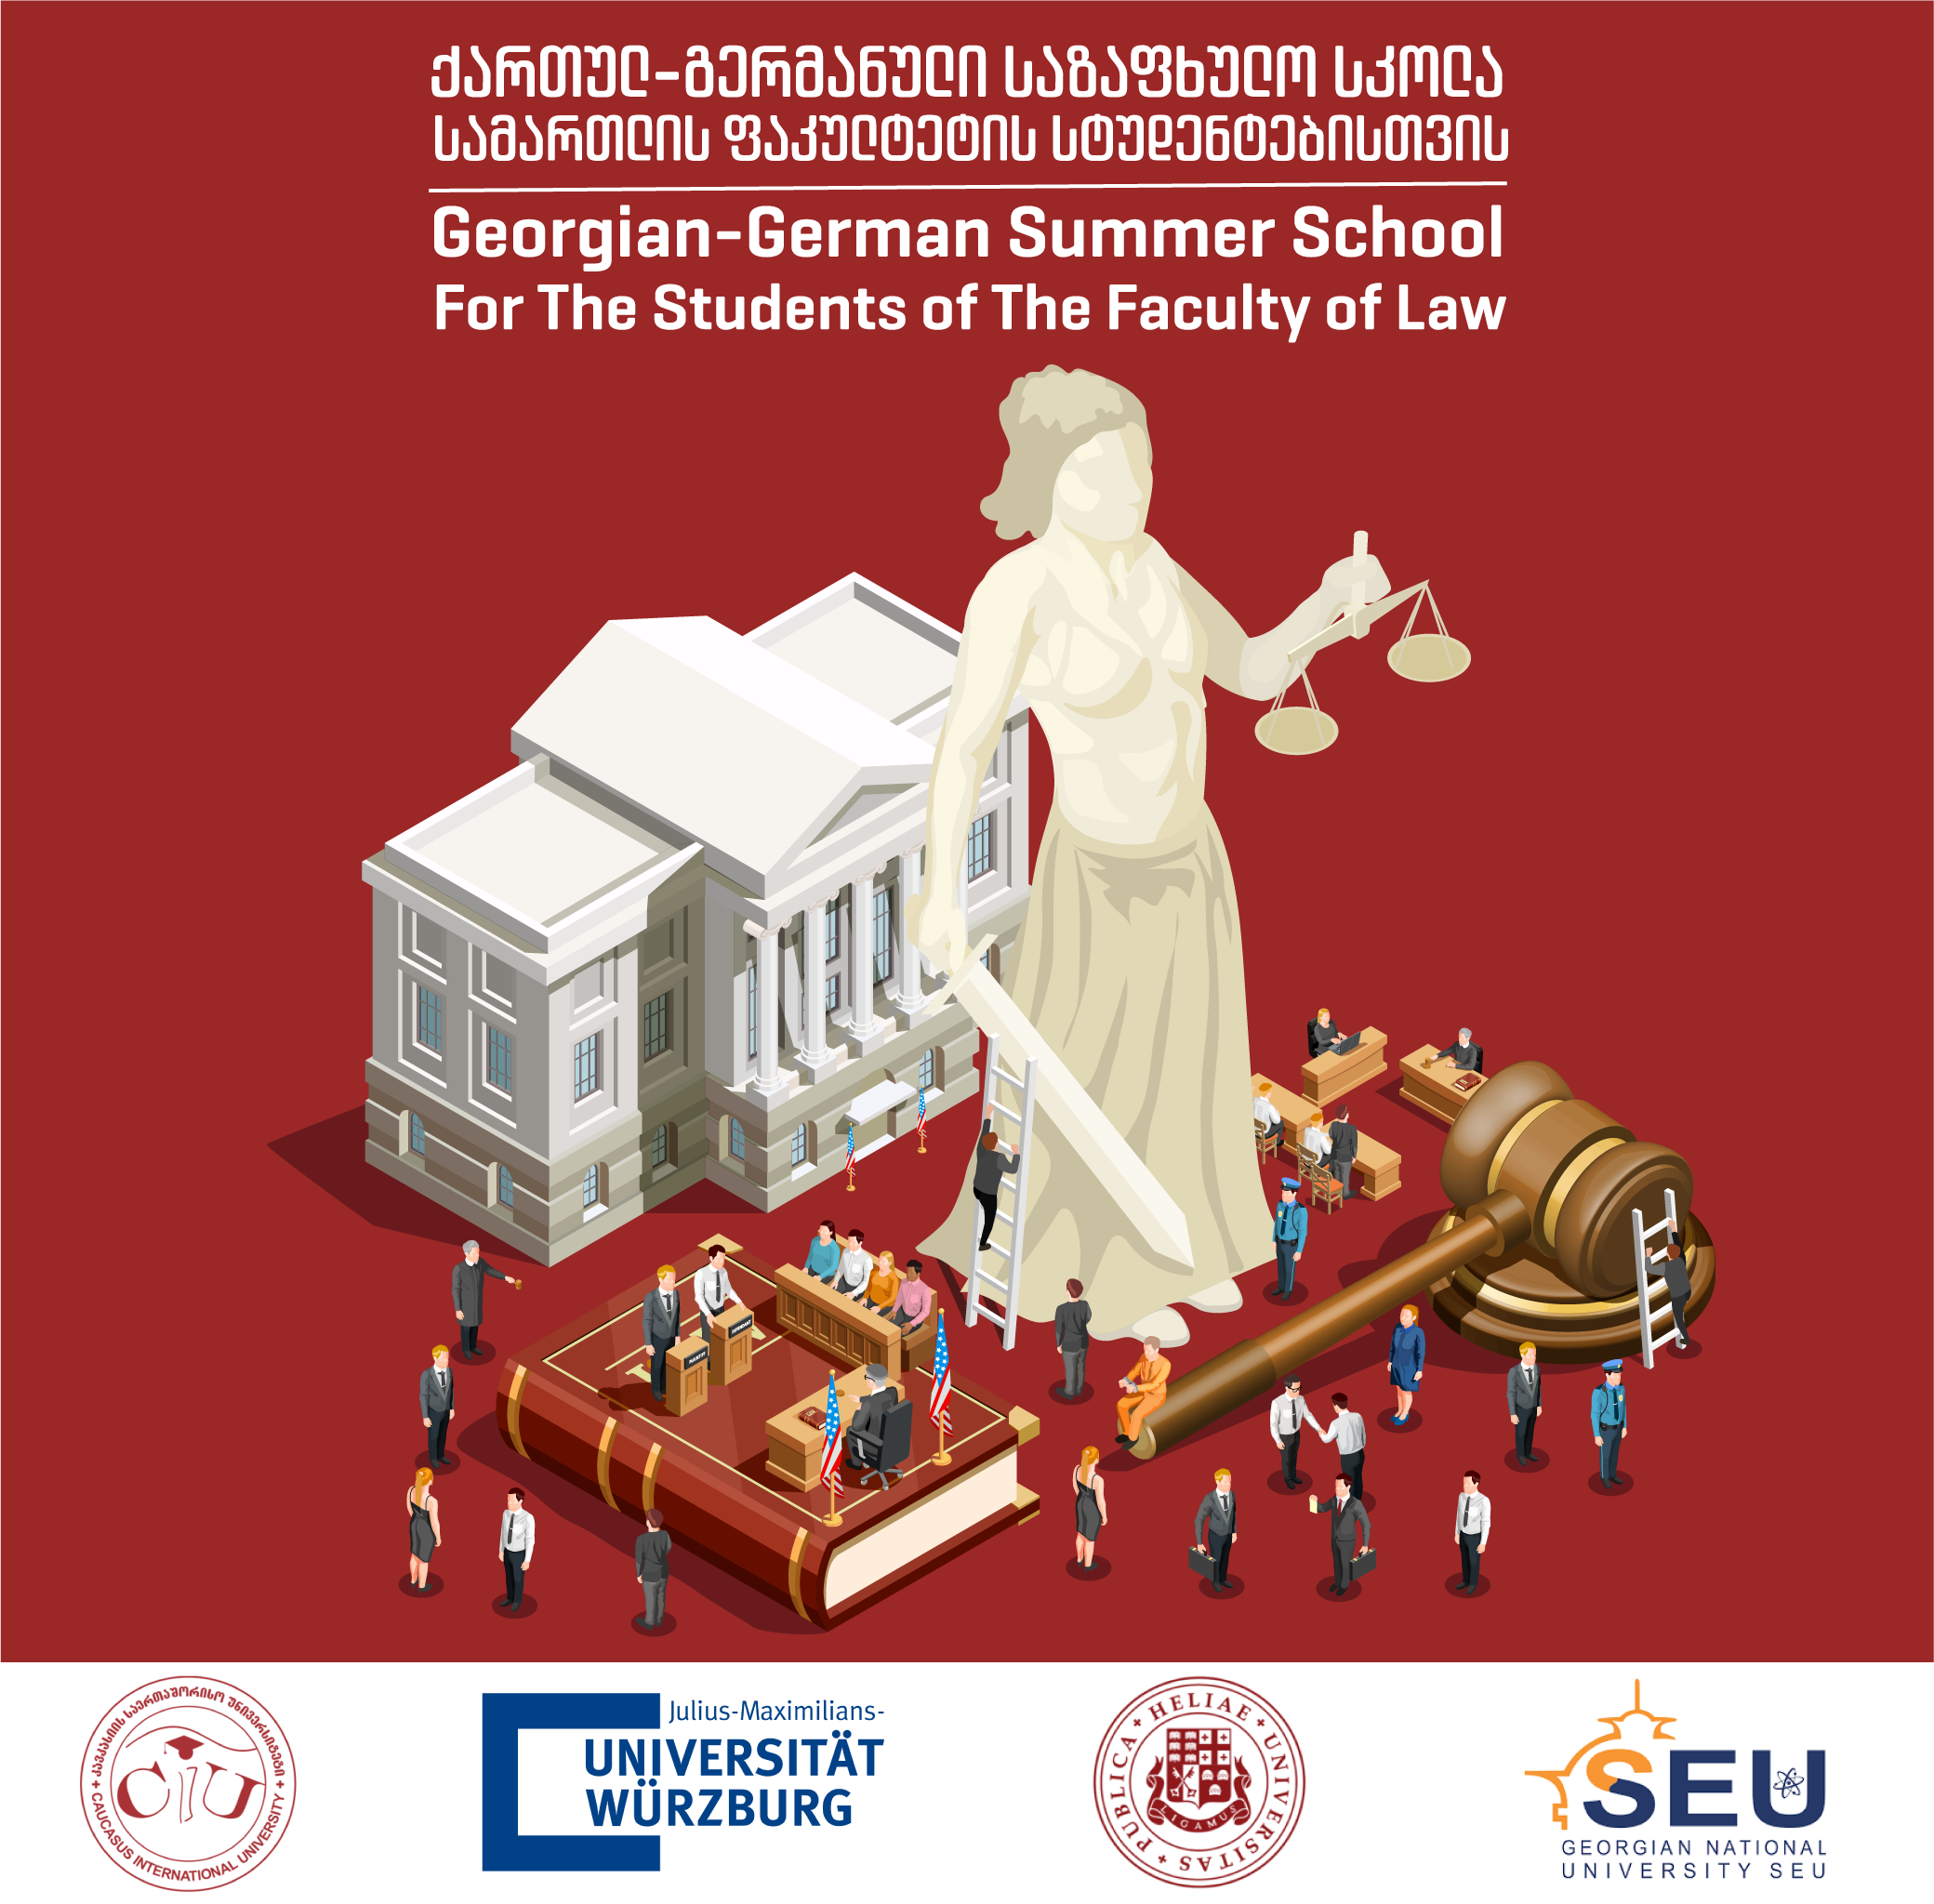 ქართულ-გერმანული საზაფხულო სკოლა სამართლის ფაკულტეტის სტუდენტებისთვის